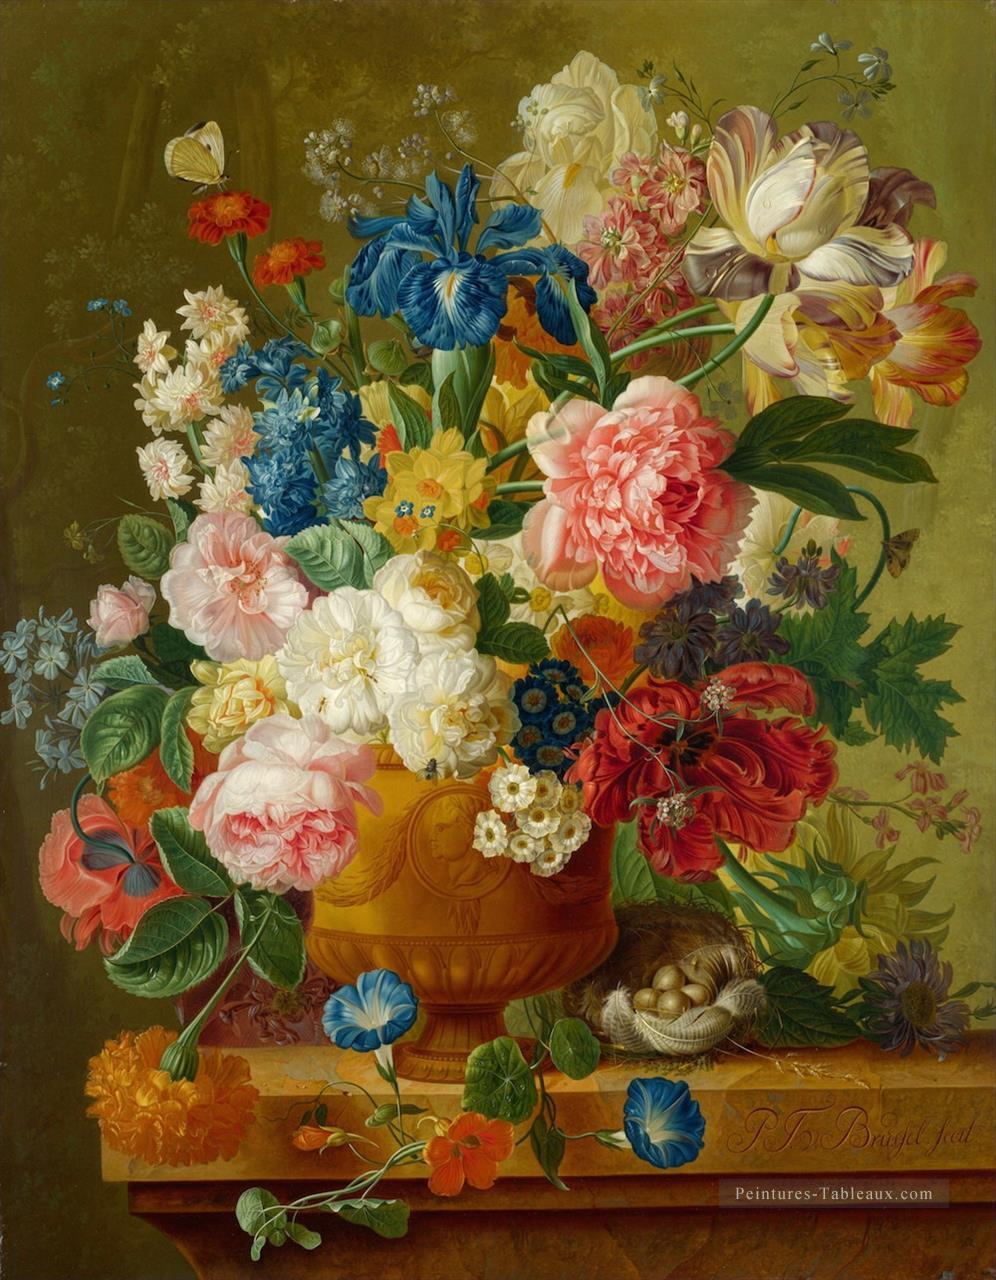 paulus theodorus van brussel Fleurs dans un vase Fleuring Peintures à l'huile